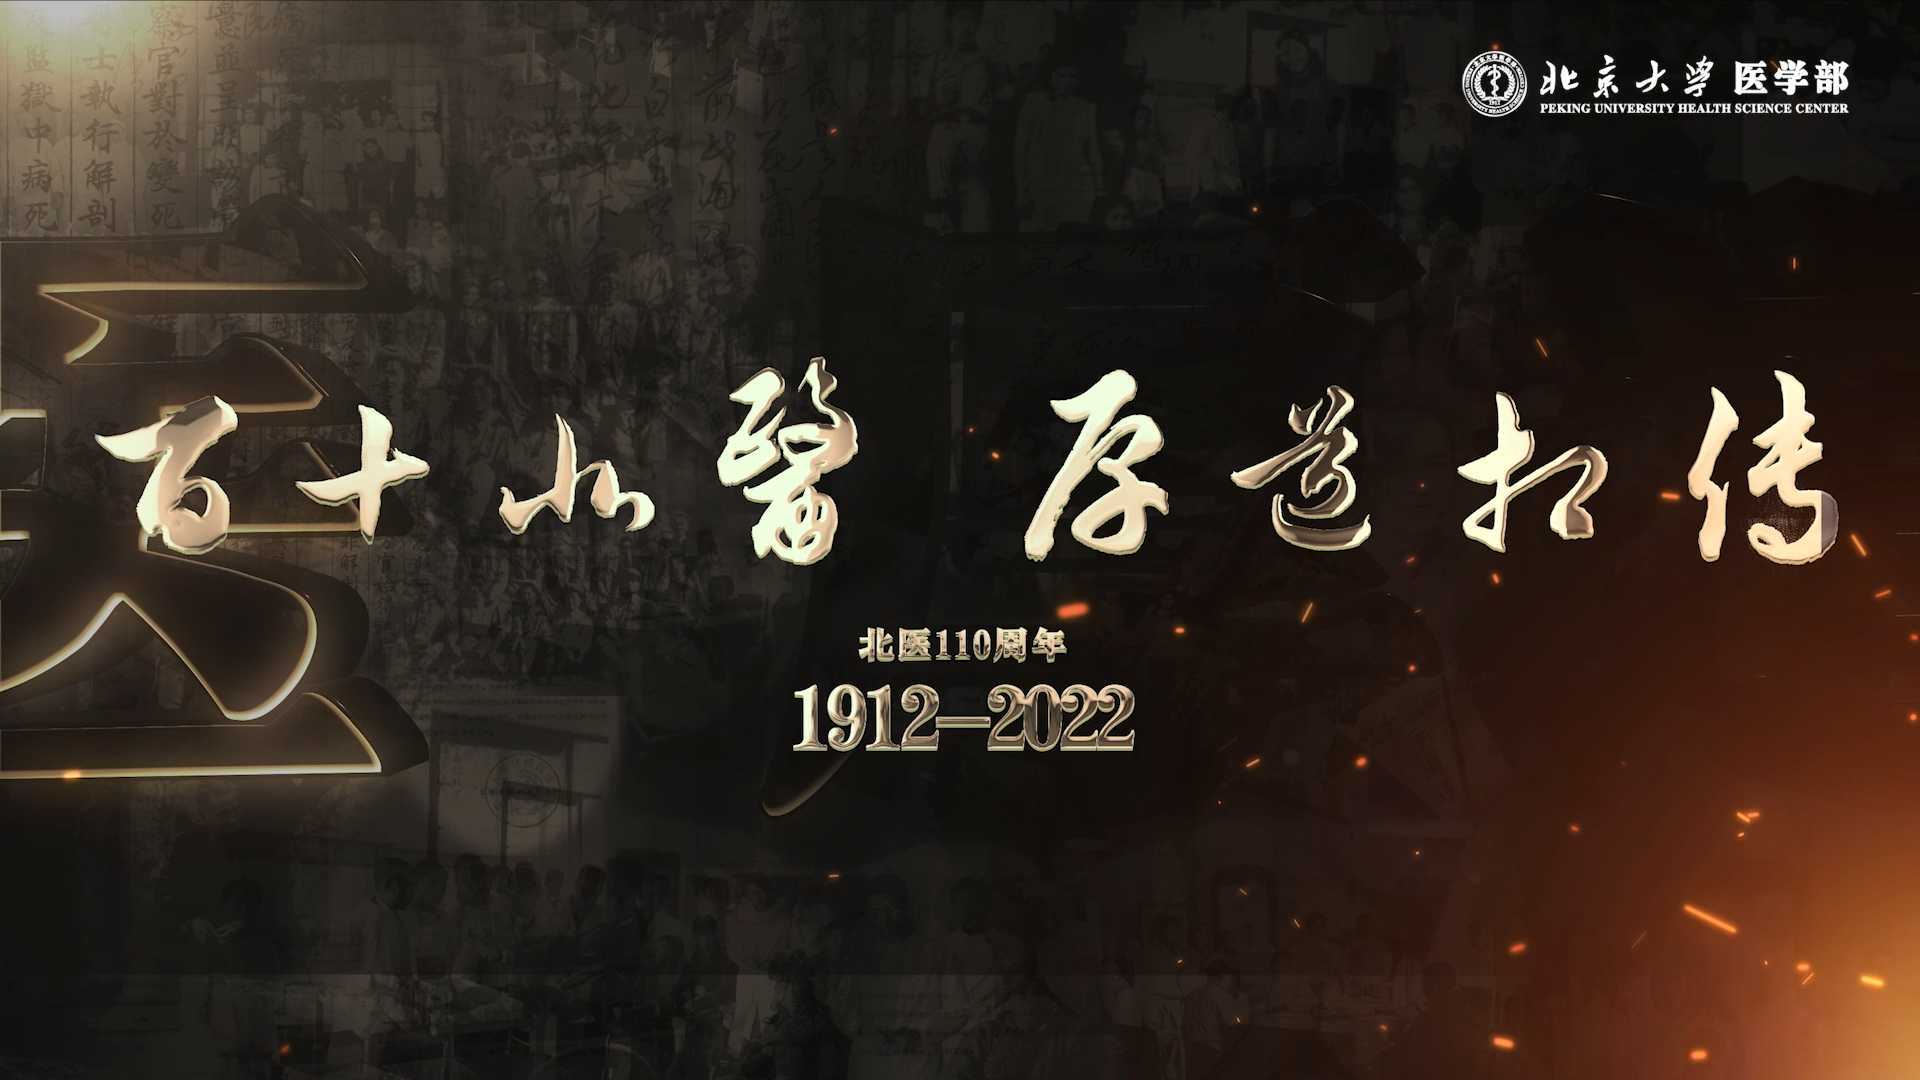 北京大学医学部办学110周年宣传片《百十北医 厚道相传》